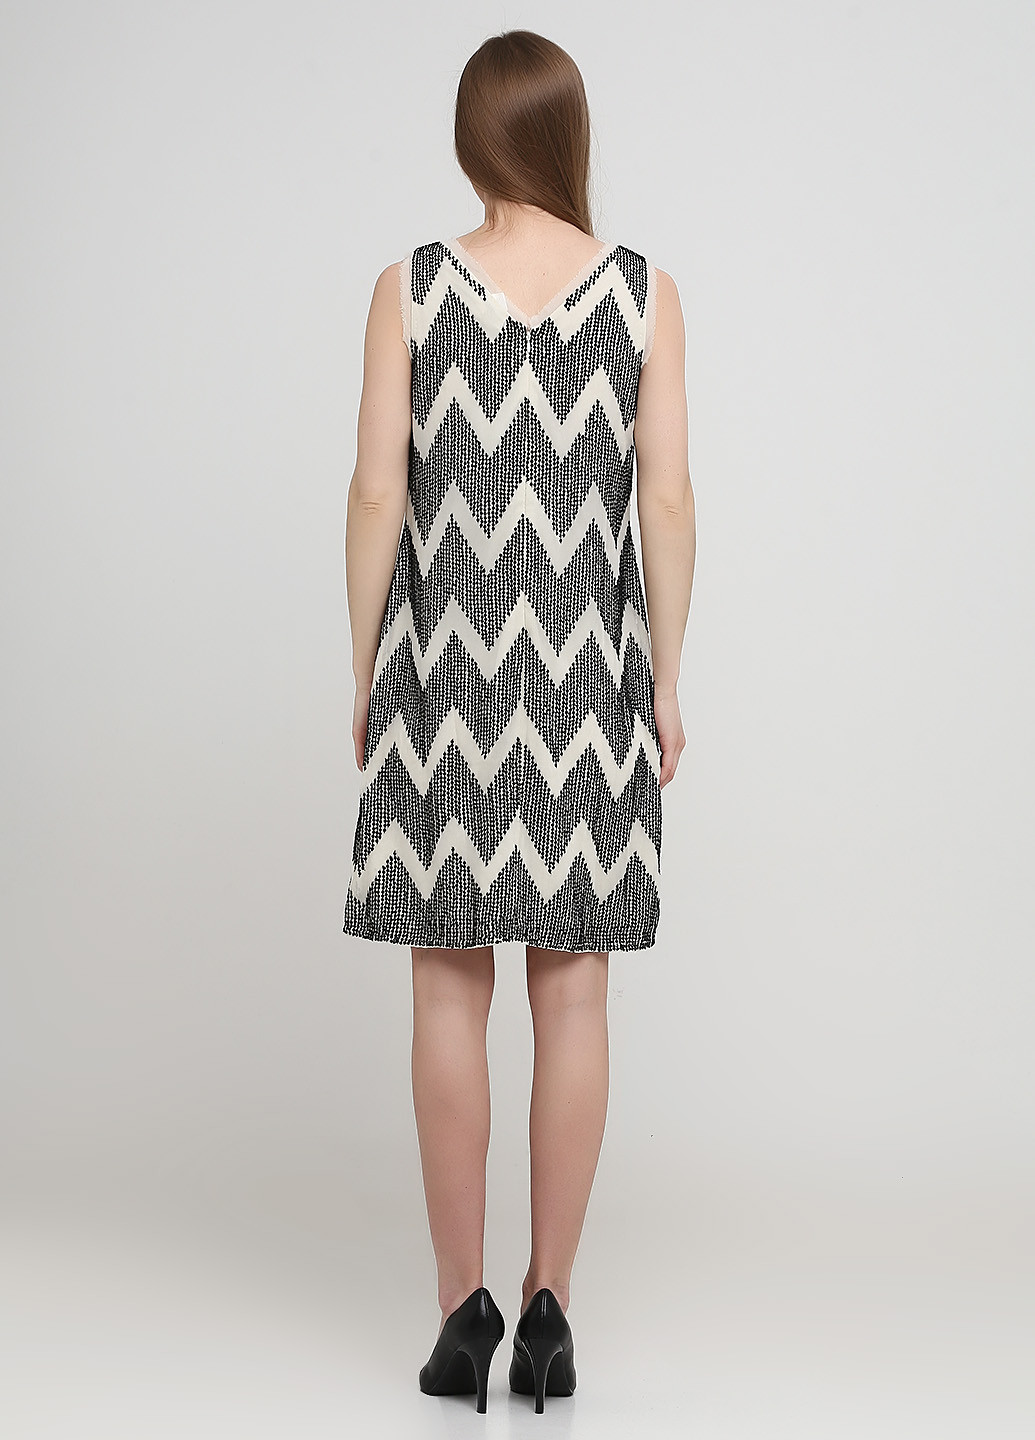 Черно-белое коктейльное платье Ashley Brooke с геометрическим узором